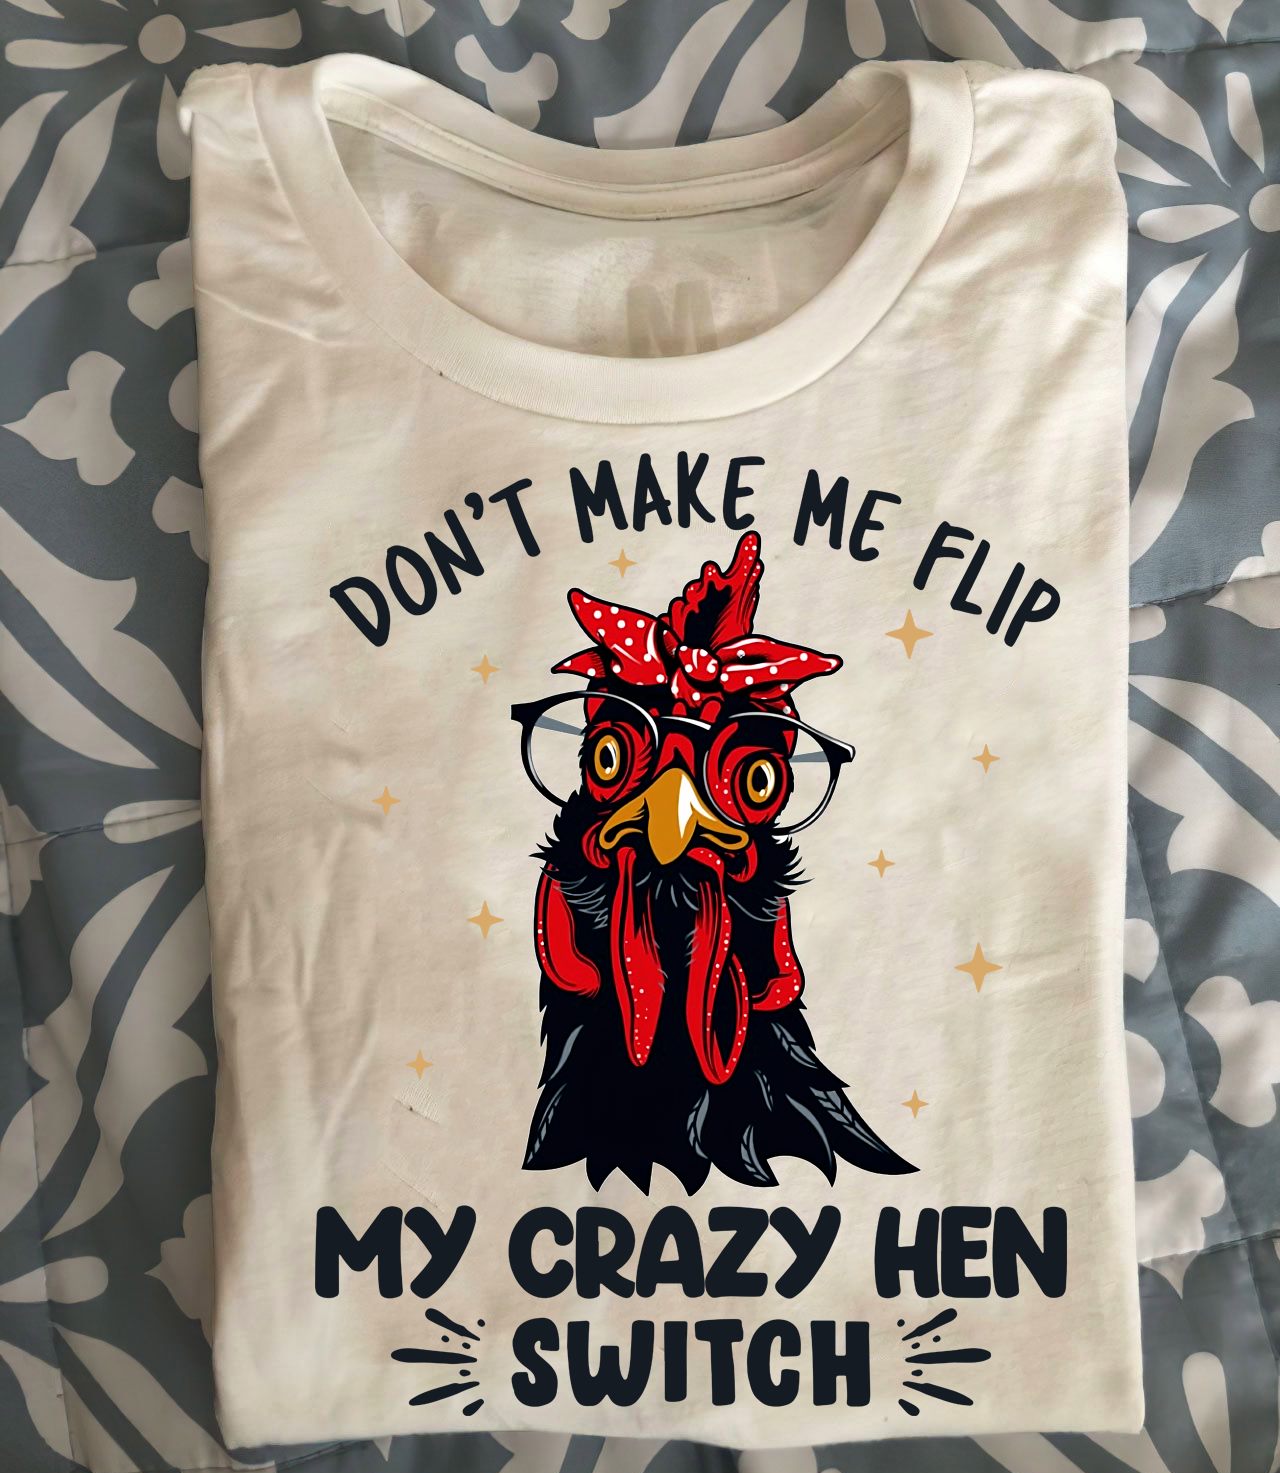 Don't make me flip my crazy hen switch - Grumpy chickens